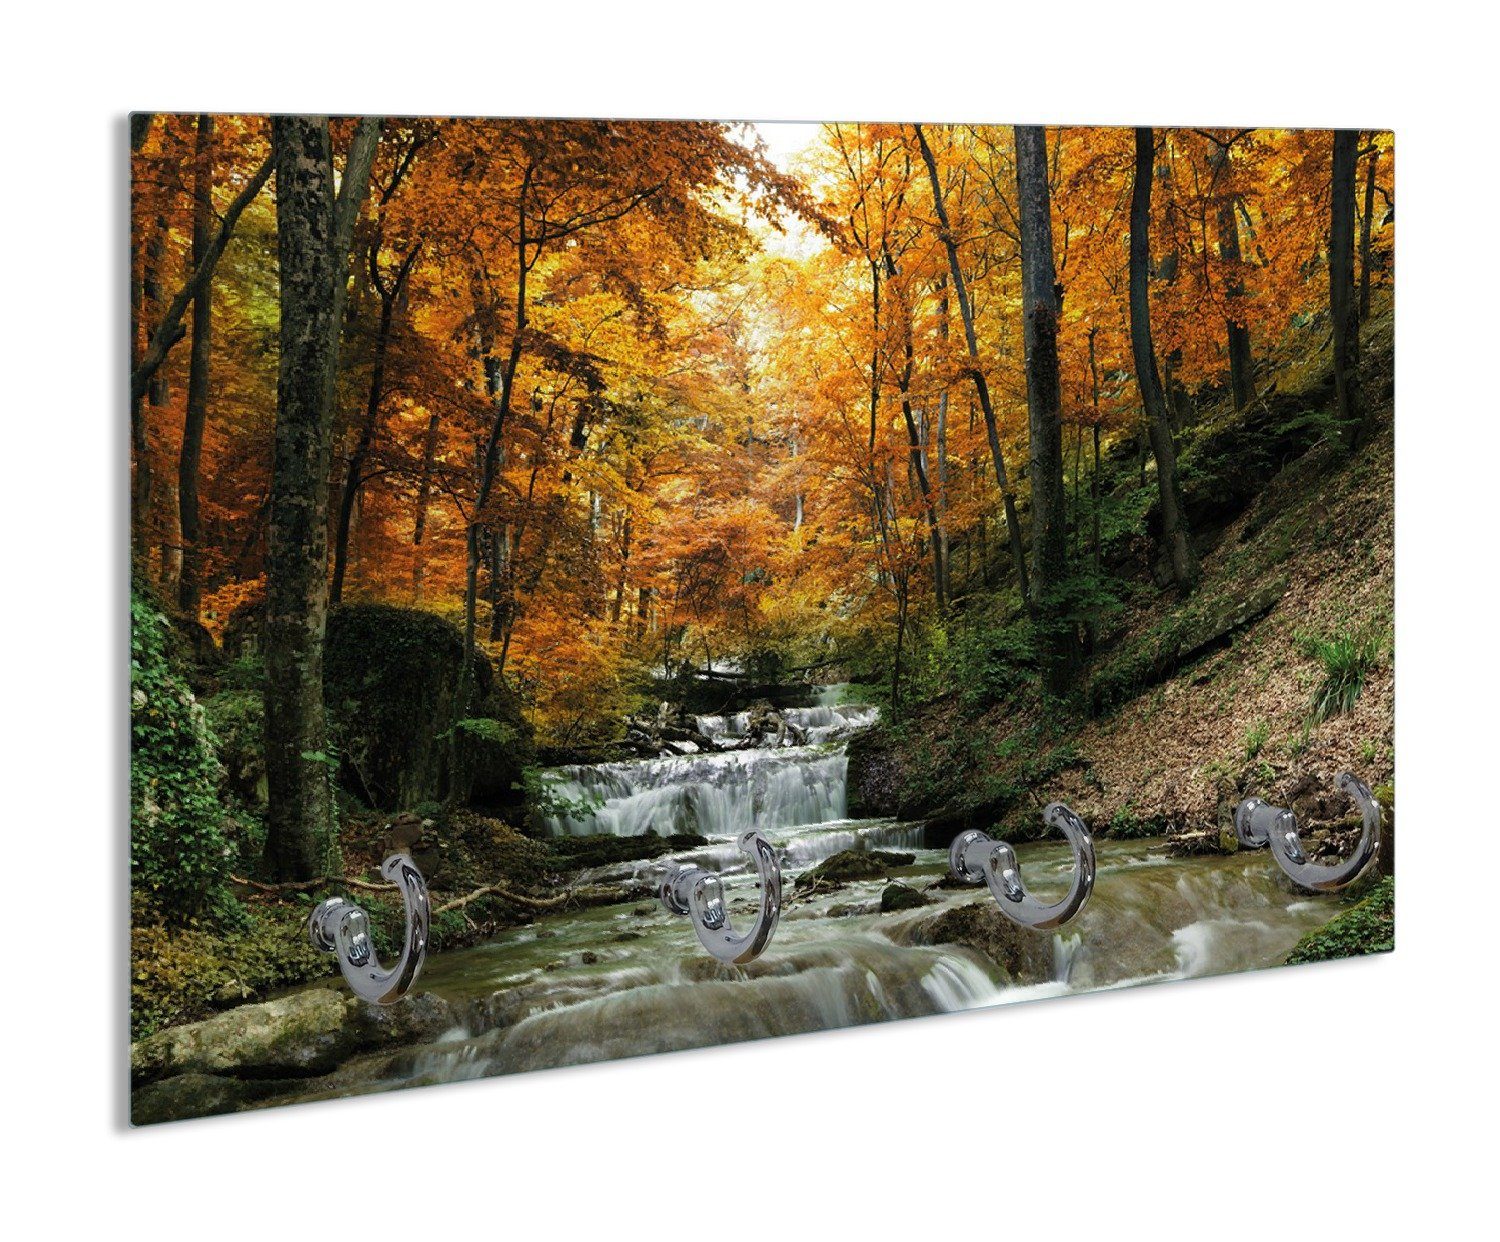 Wallario Handtuchhalter Kleiner Bach über Steine im Herbstwald, aus Glas mit 4 Metallhaken